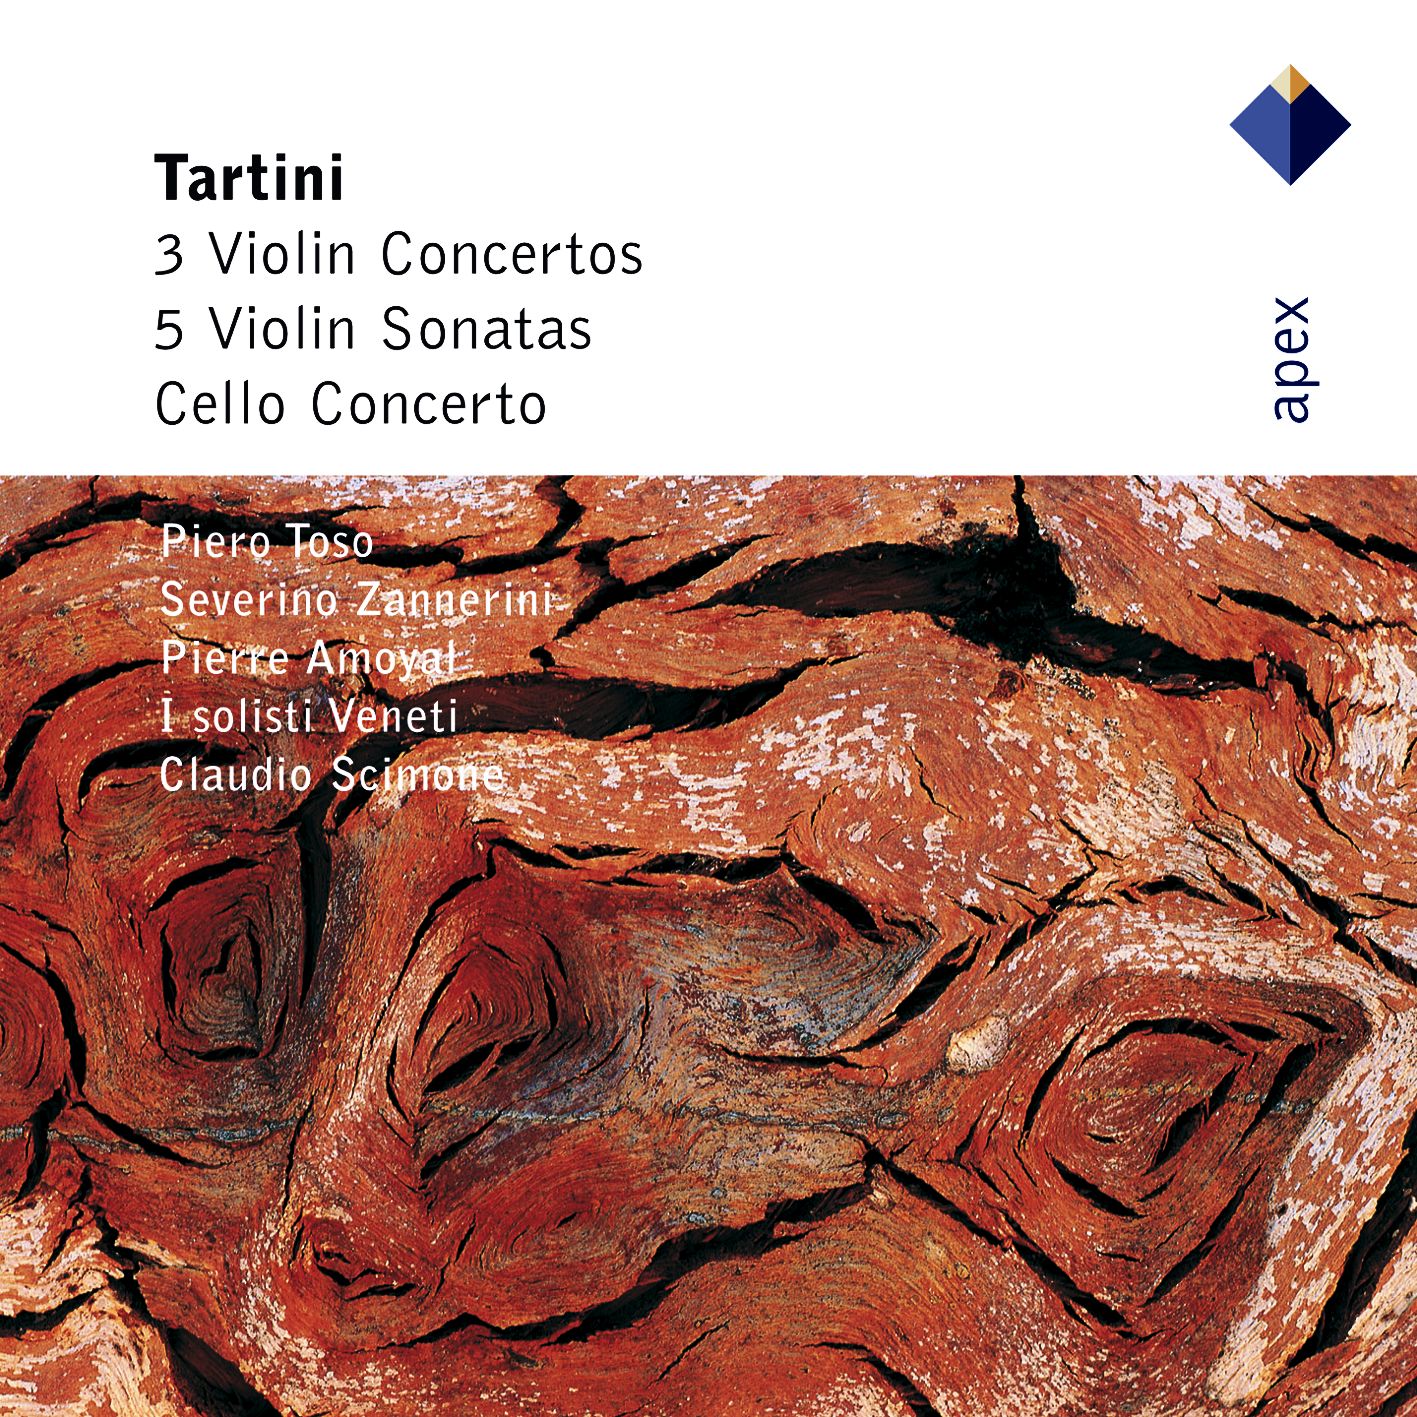 Tartini : Violin Concerto in E minor D56 : II Adagio